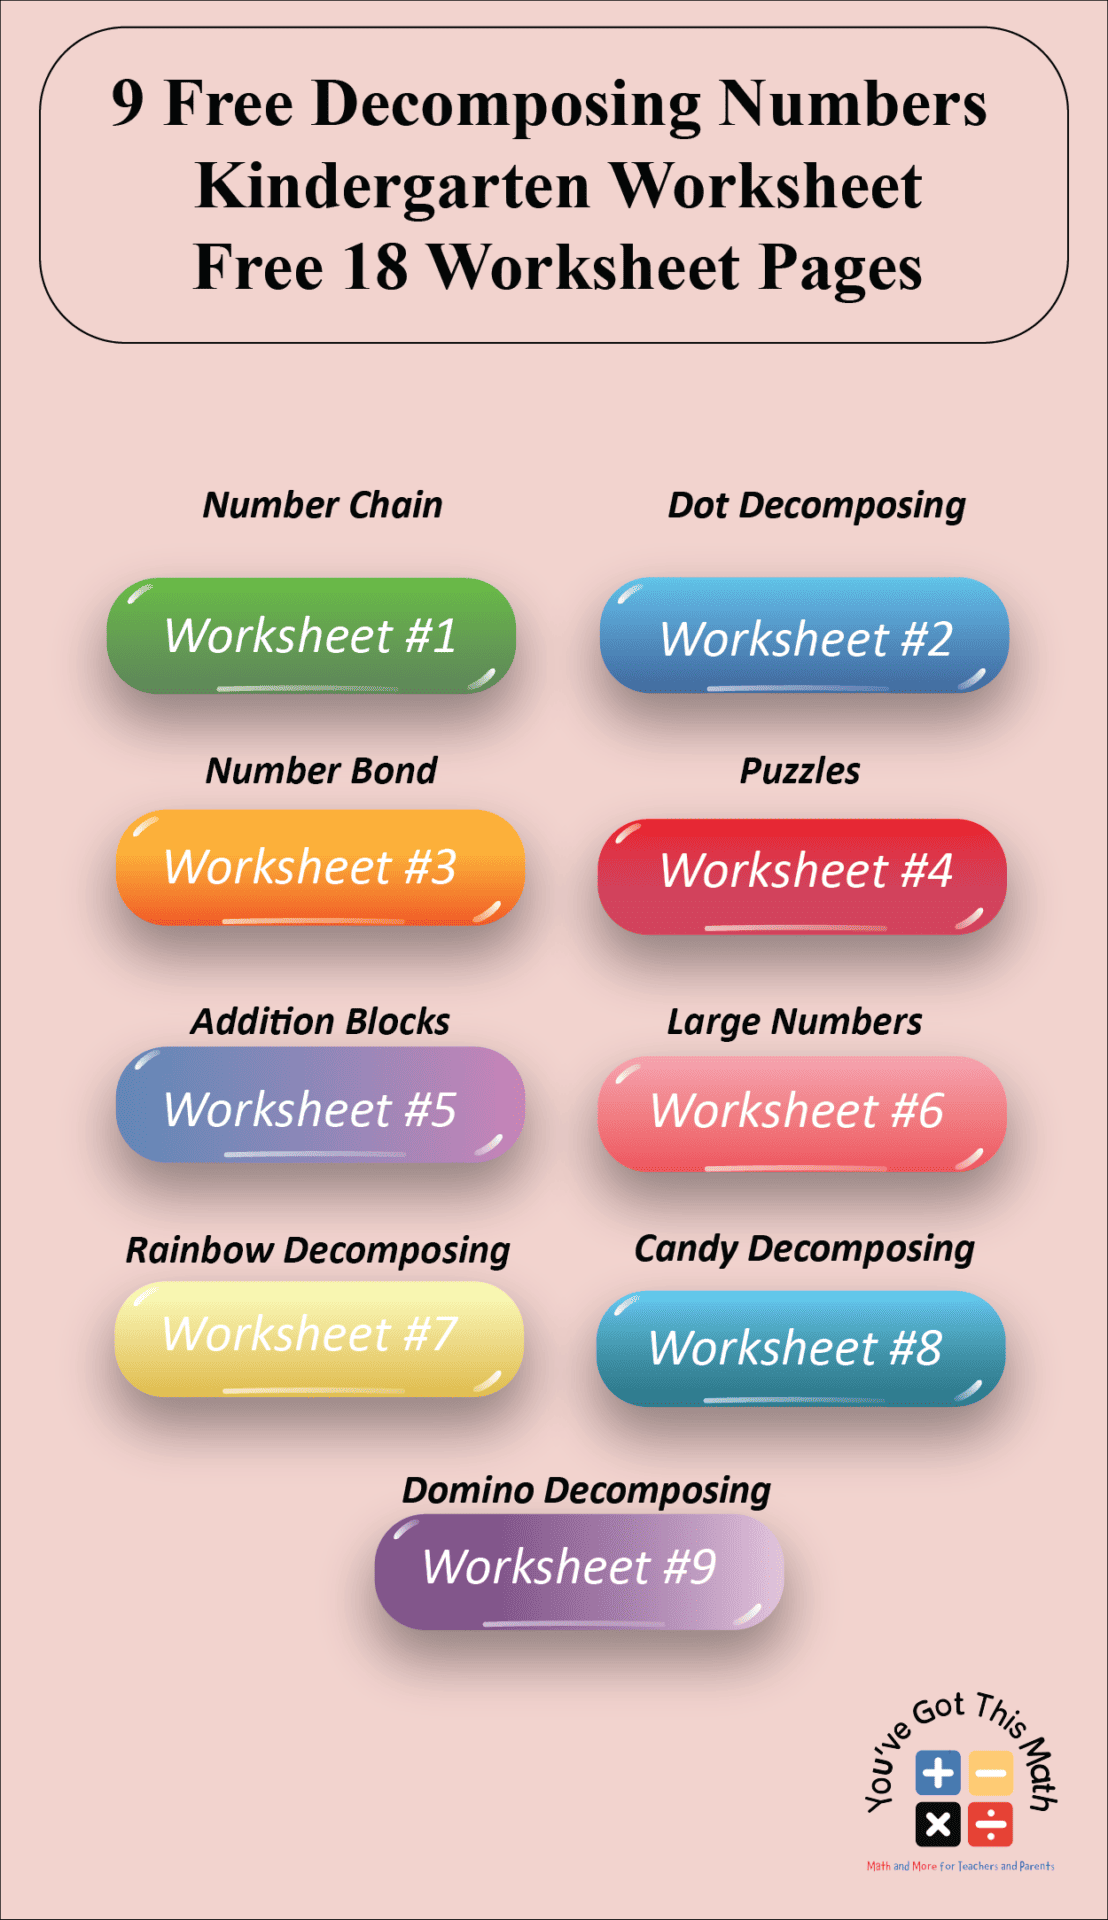 9-free-decomposing-numbers-kindergarten-worksheet